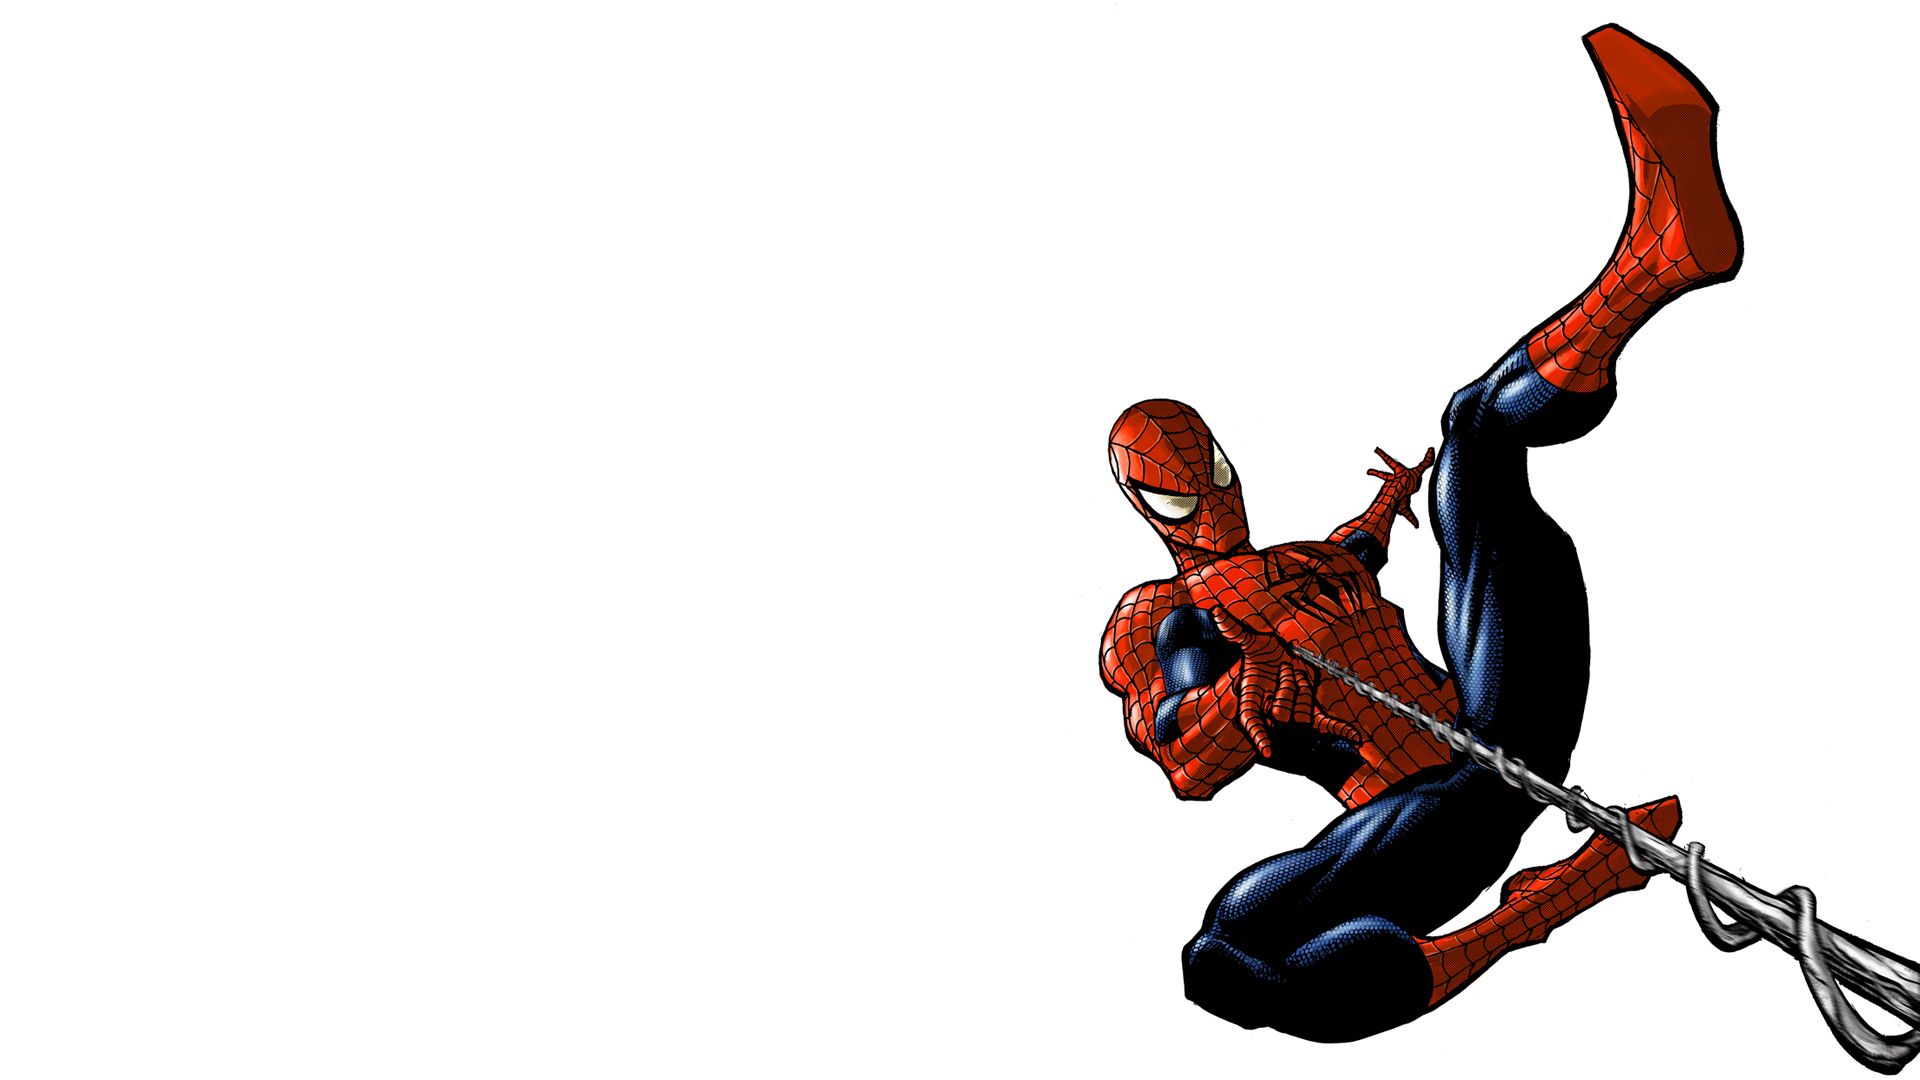 Spiderman HD Wallpaper | 1920x1080 | ID:32443